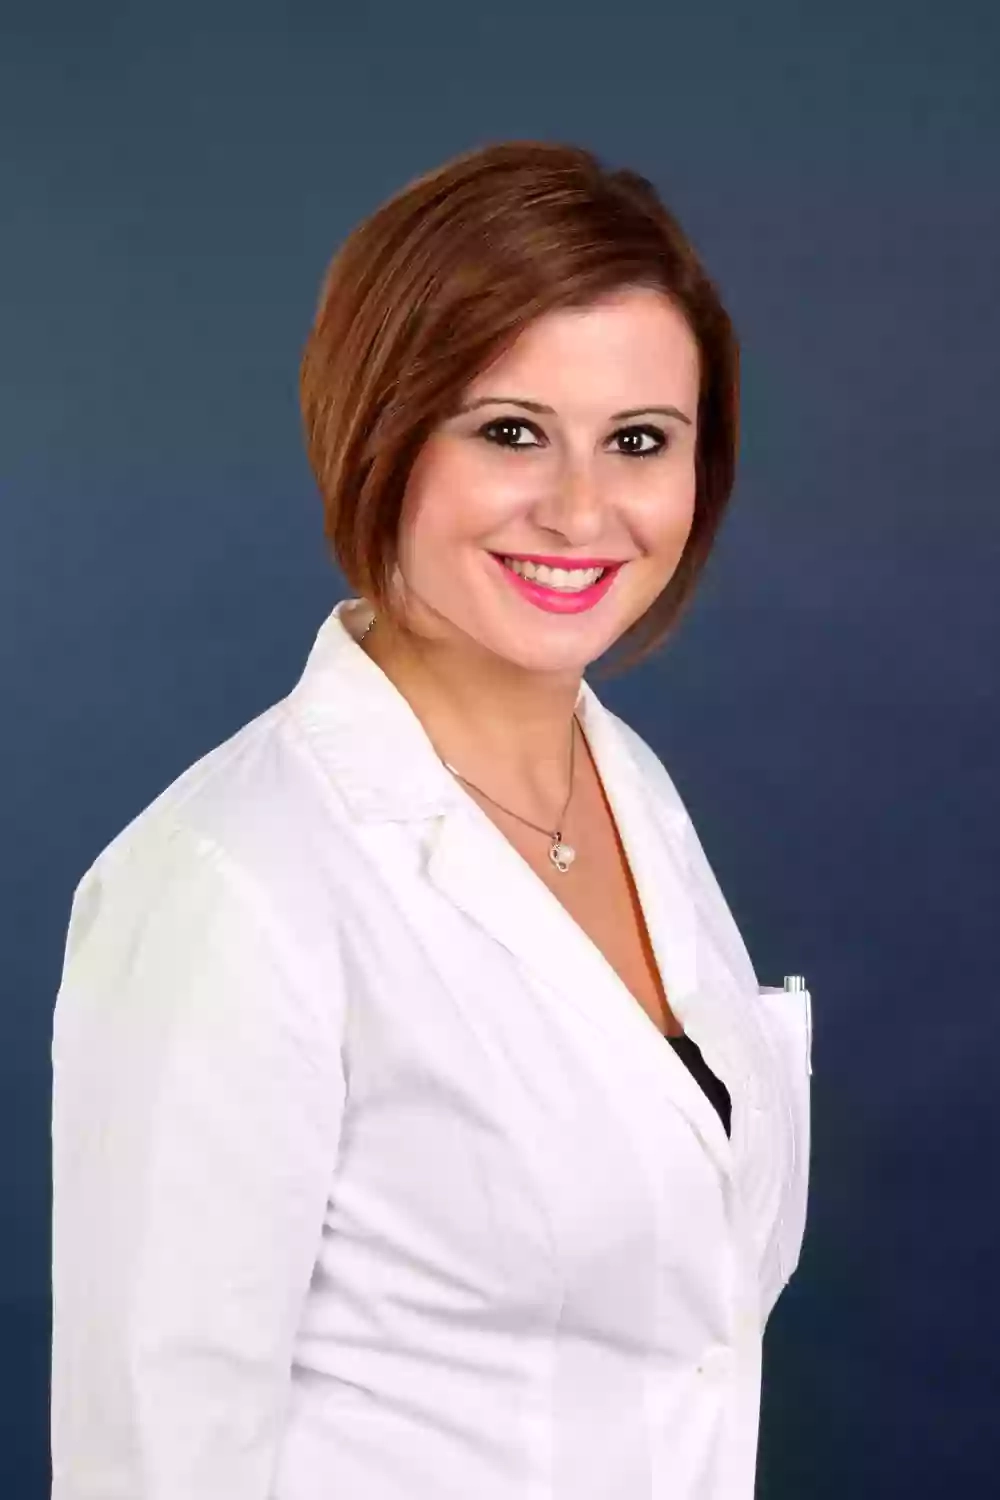 Psicologa - Psicoterapeuta Dott.ssa Maria Antonella Quatraro